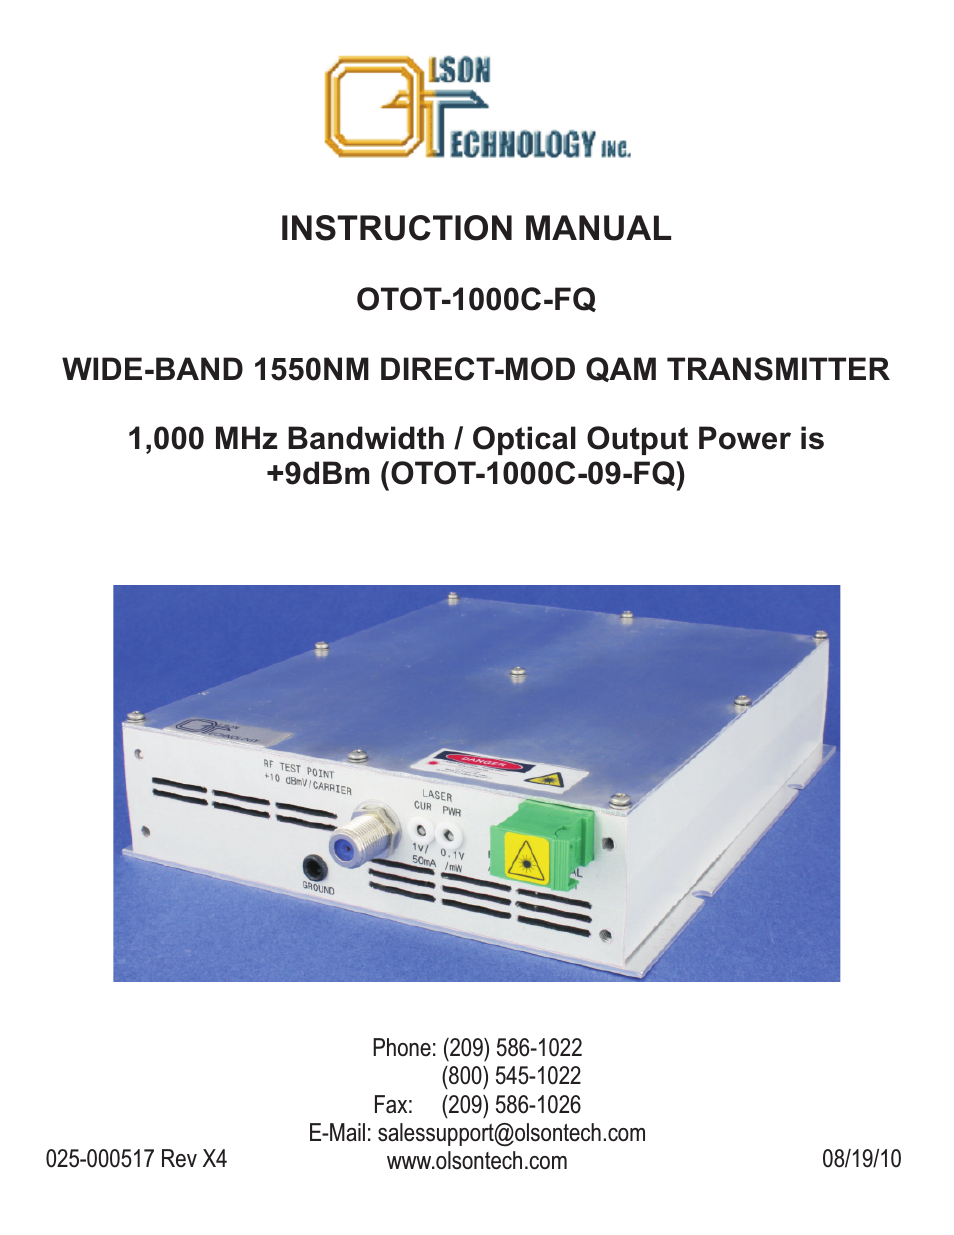 OTOT-1000C-9-FQ